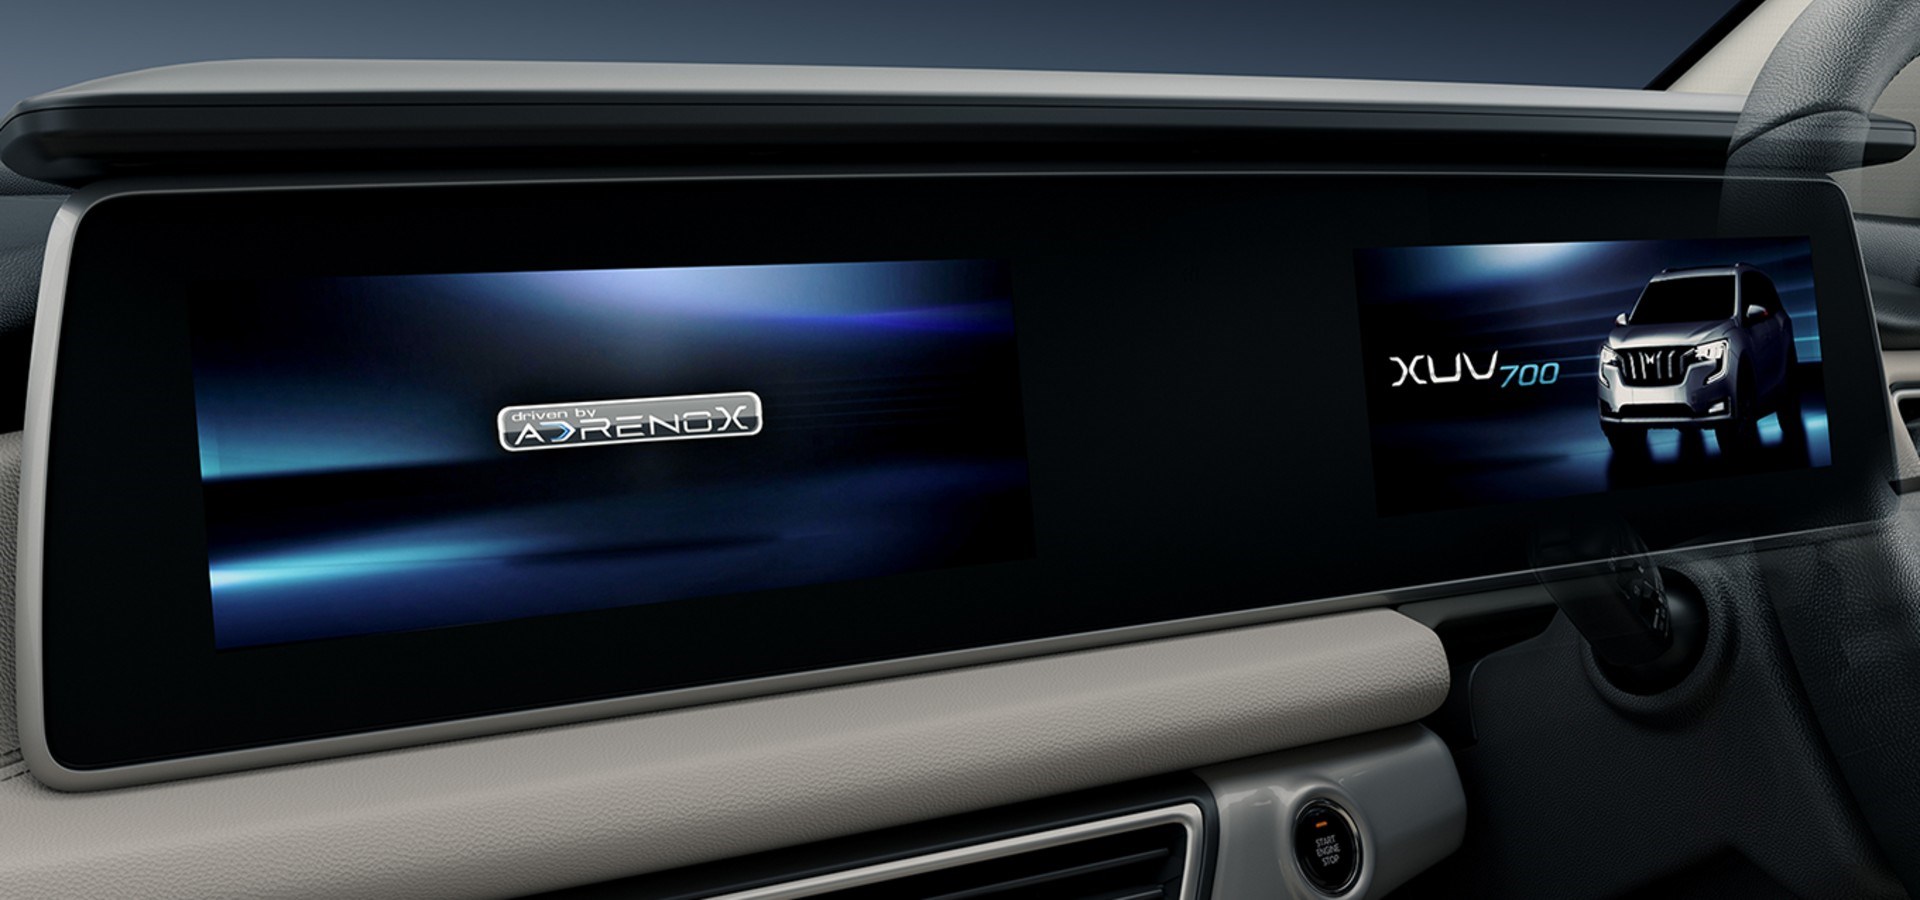 Mahindra, yeni logoyla gelen ilk modeli XUV700'ü tanıttı